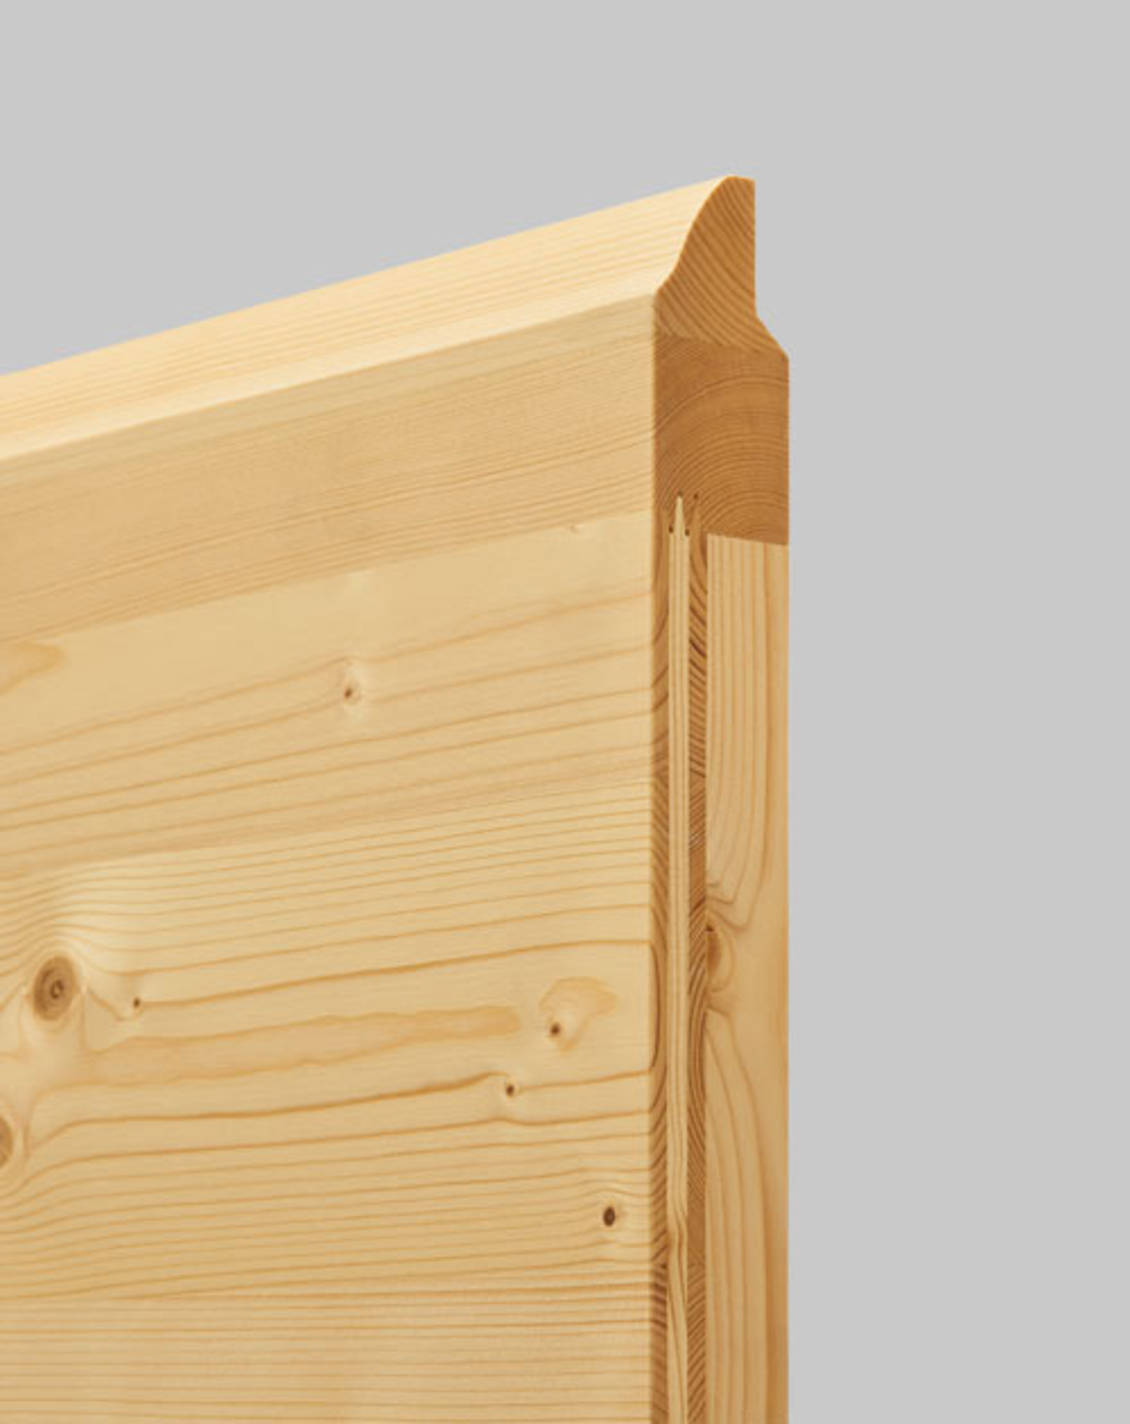 Ворота из панелей массивной древесины идеально подходят для деревянных домов или зданий с многочисленными деревянными элементами, например, фахверк или элементы фасада. 